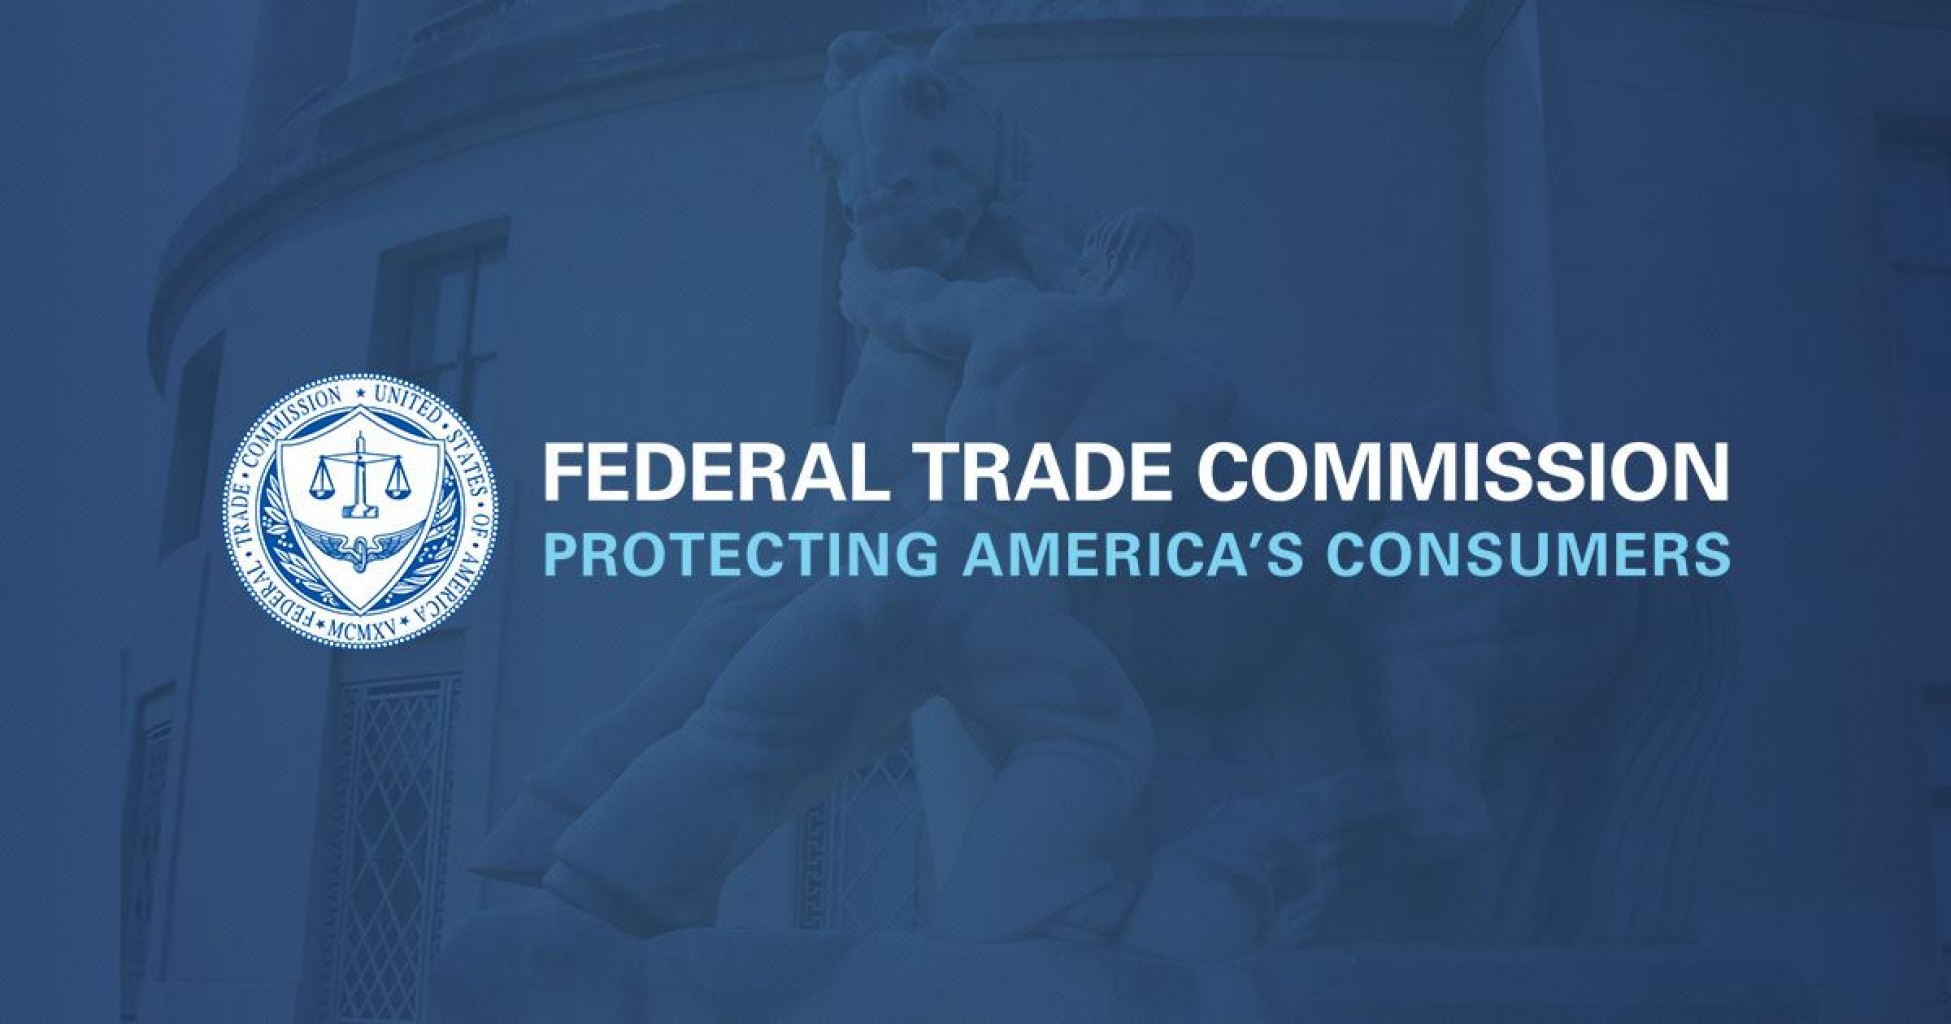 La FTC pone bajo aviso a más de 1,100 negocios con respecto a declaraciones engañosas sobre ganar dinero